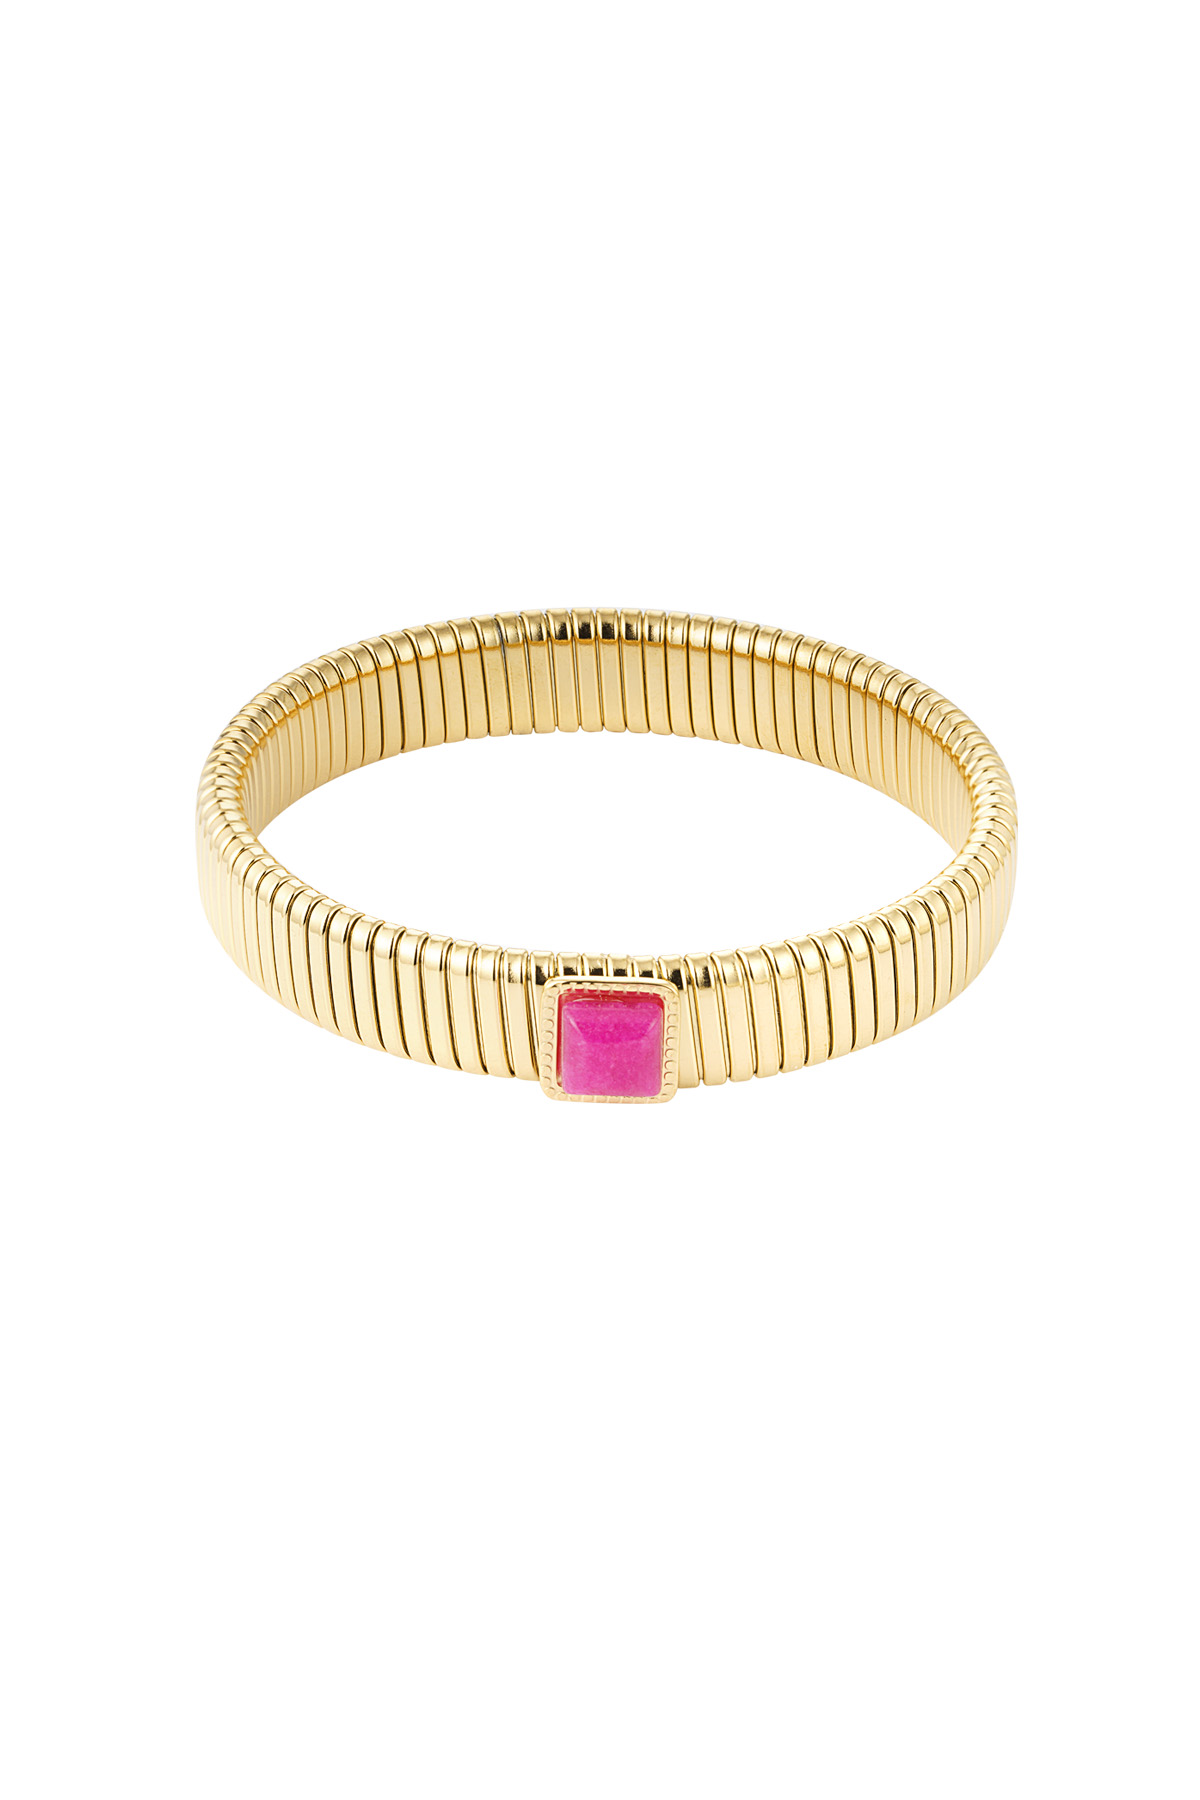 Bohemian bracelet pink stone - Gold h5 